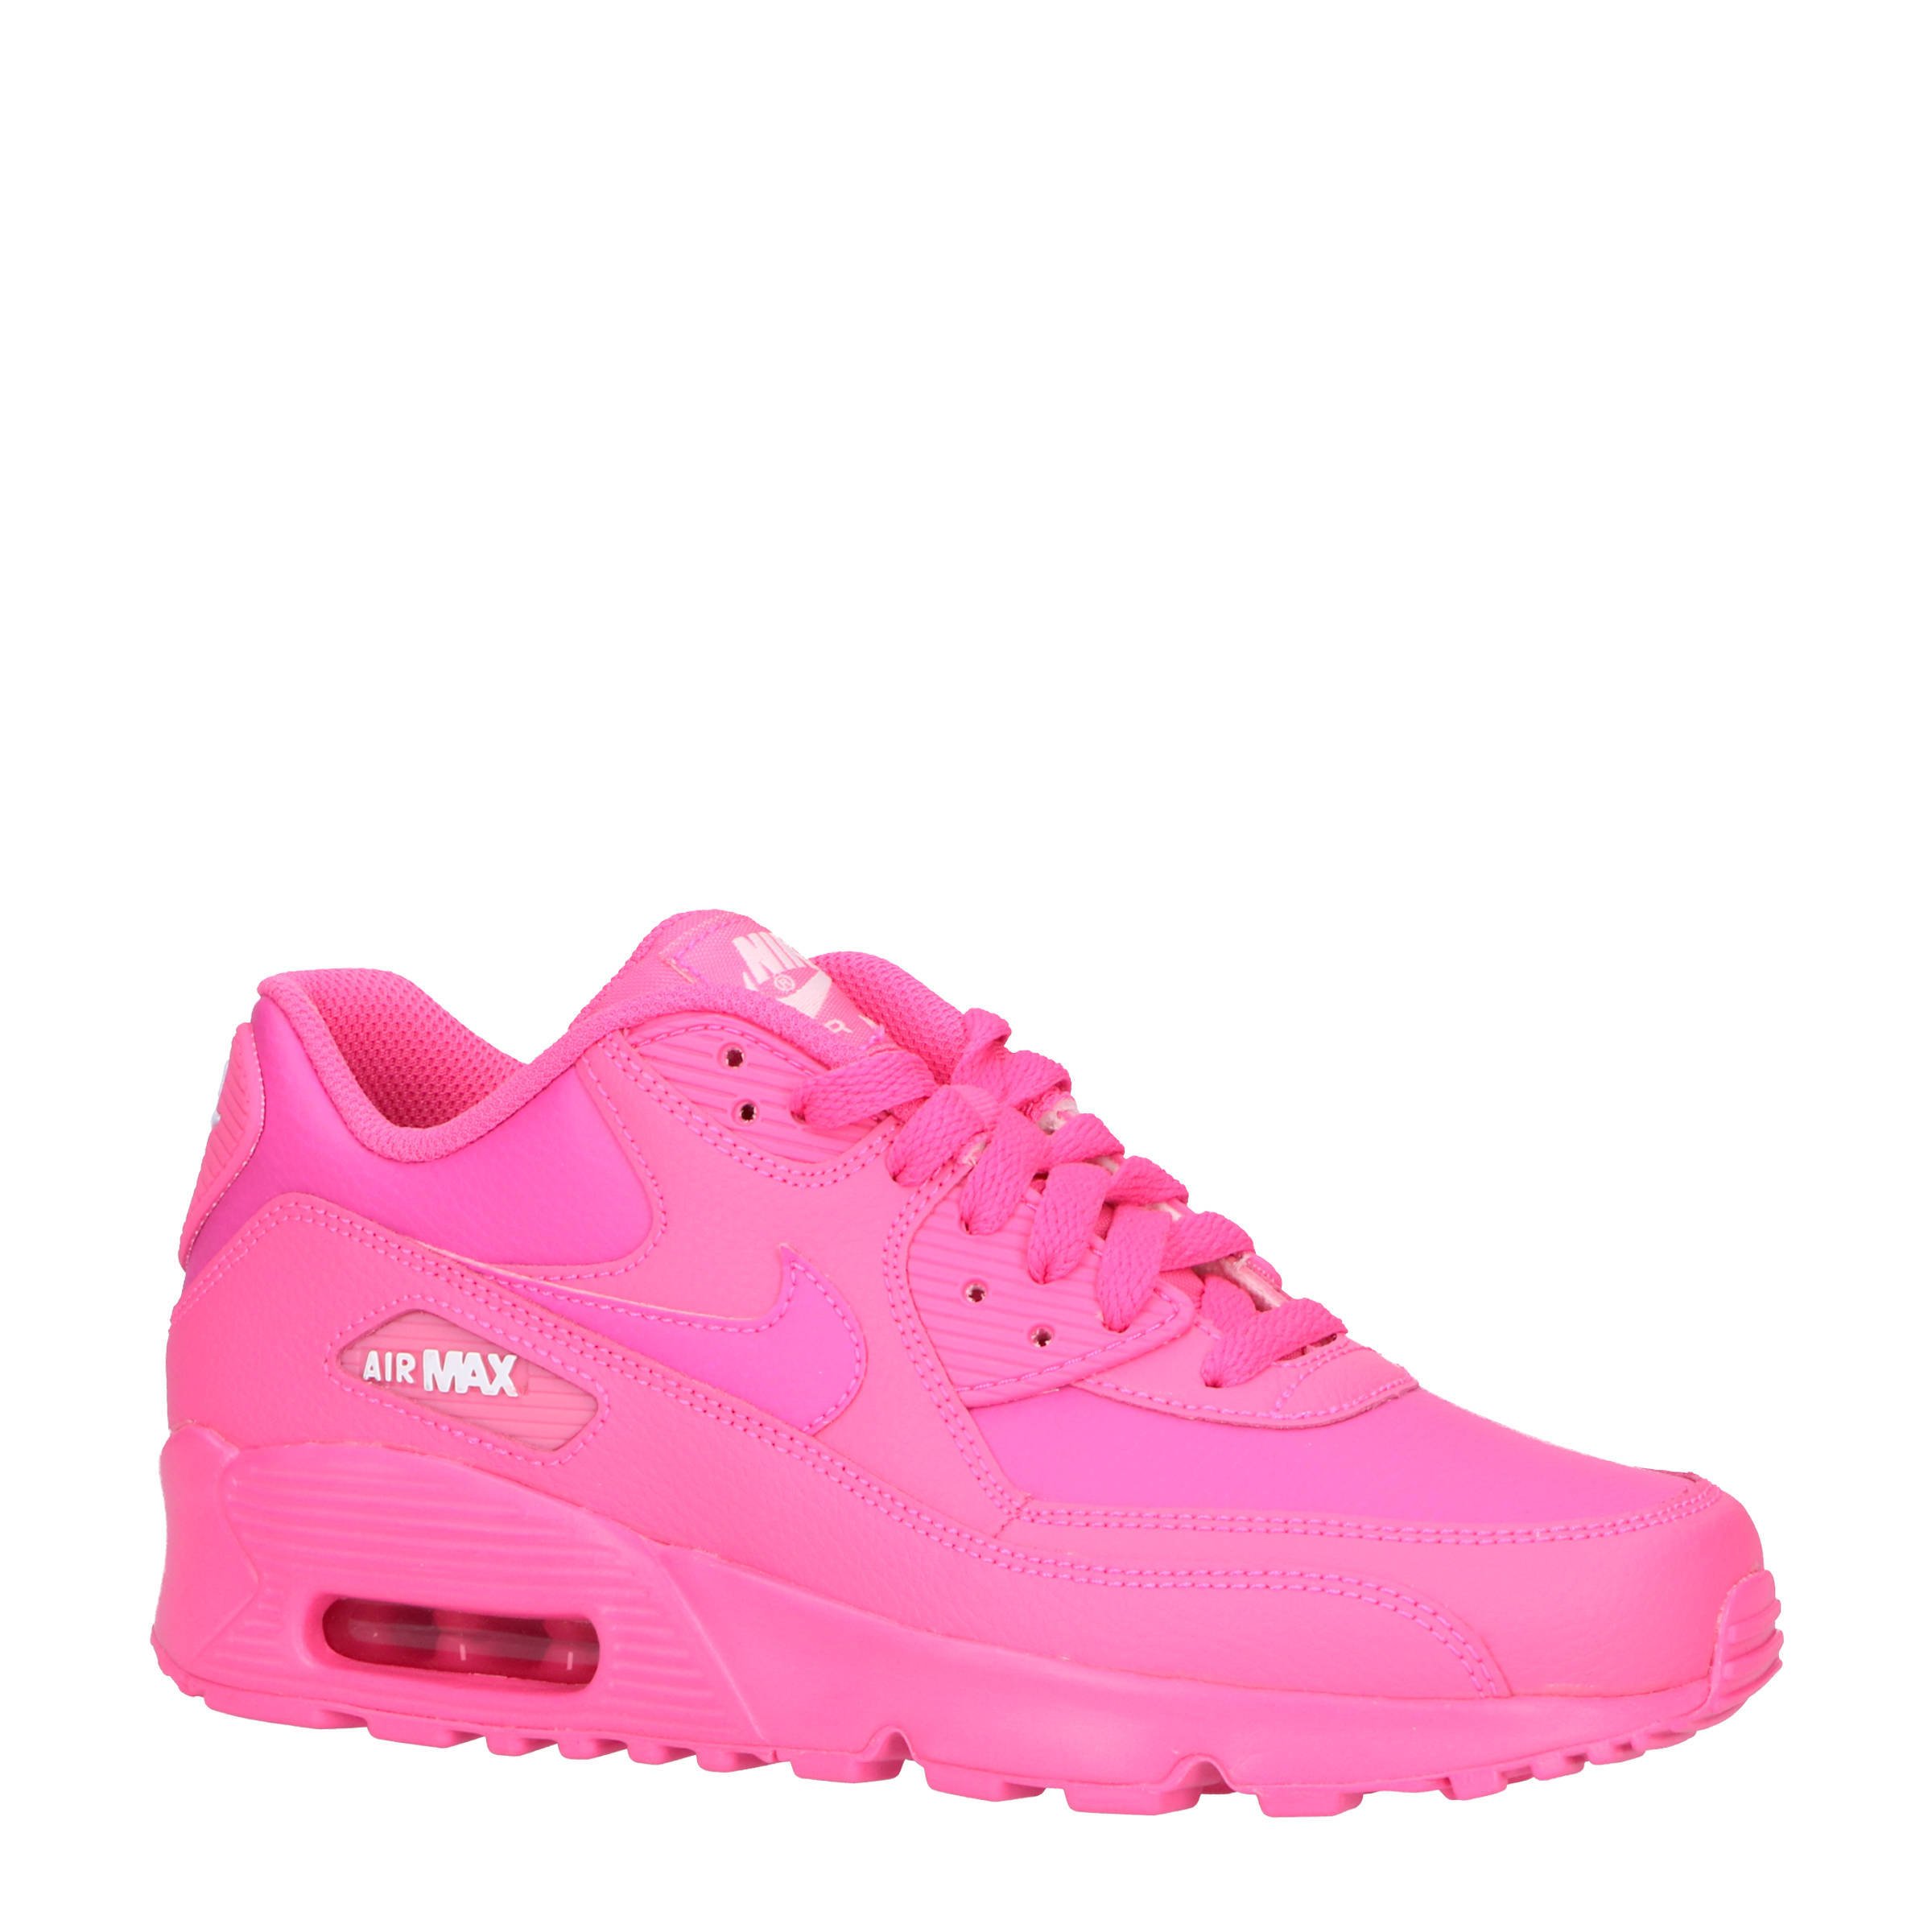 roze nike schoenen dames online